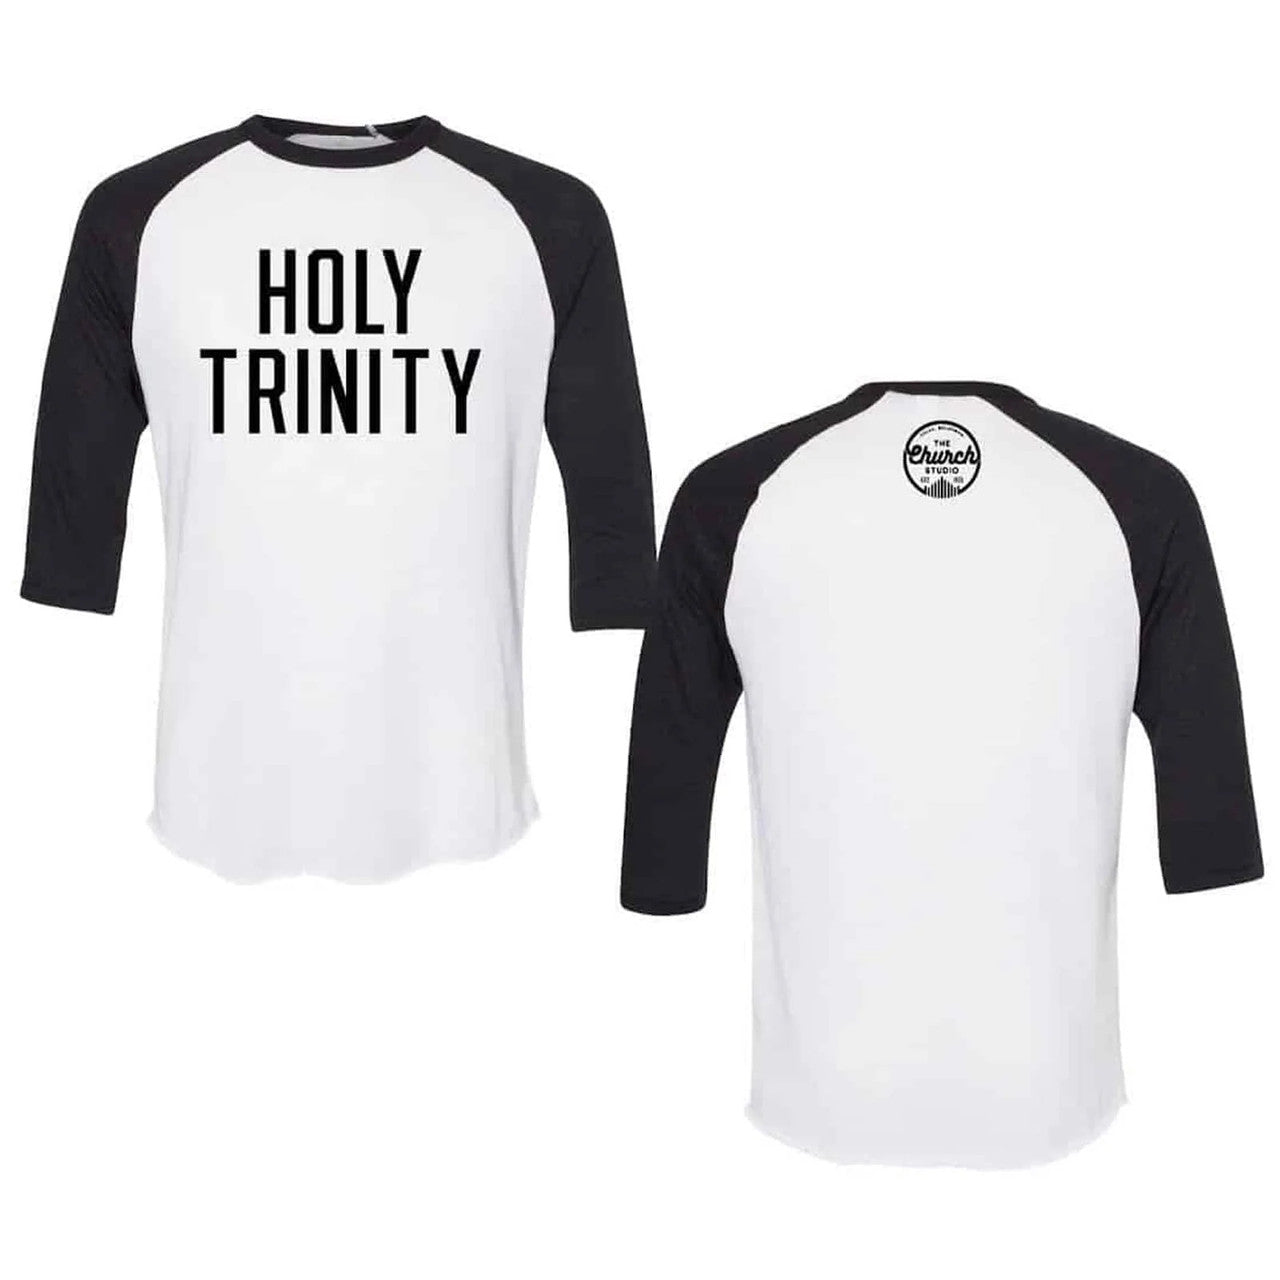 Holy Trinity Baseball Tee